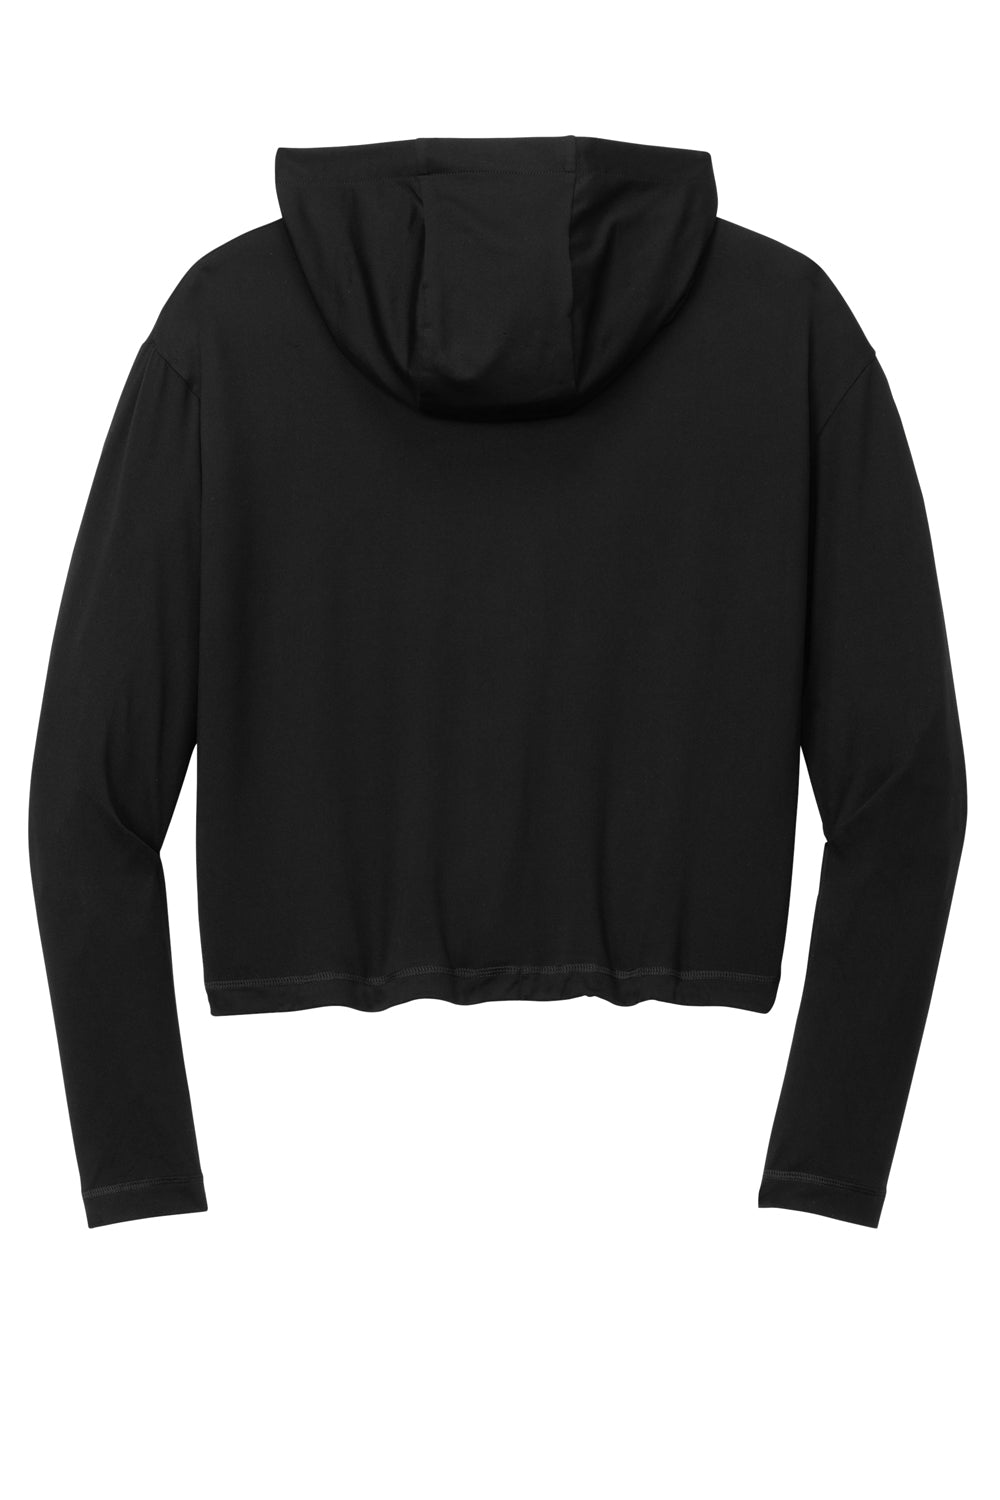 New Era Womens Power Long Sleeve Hooded Sweatshirt Hoodie Black Flat Back